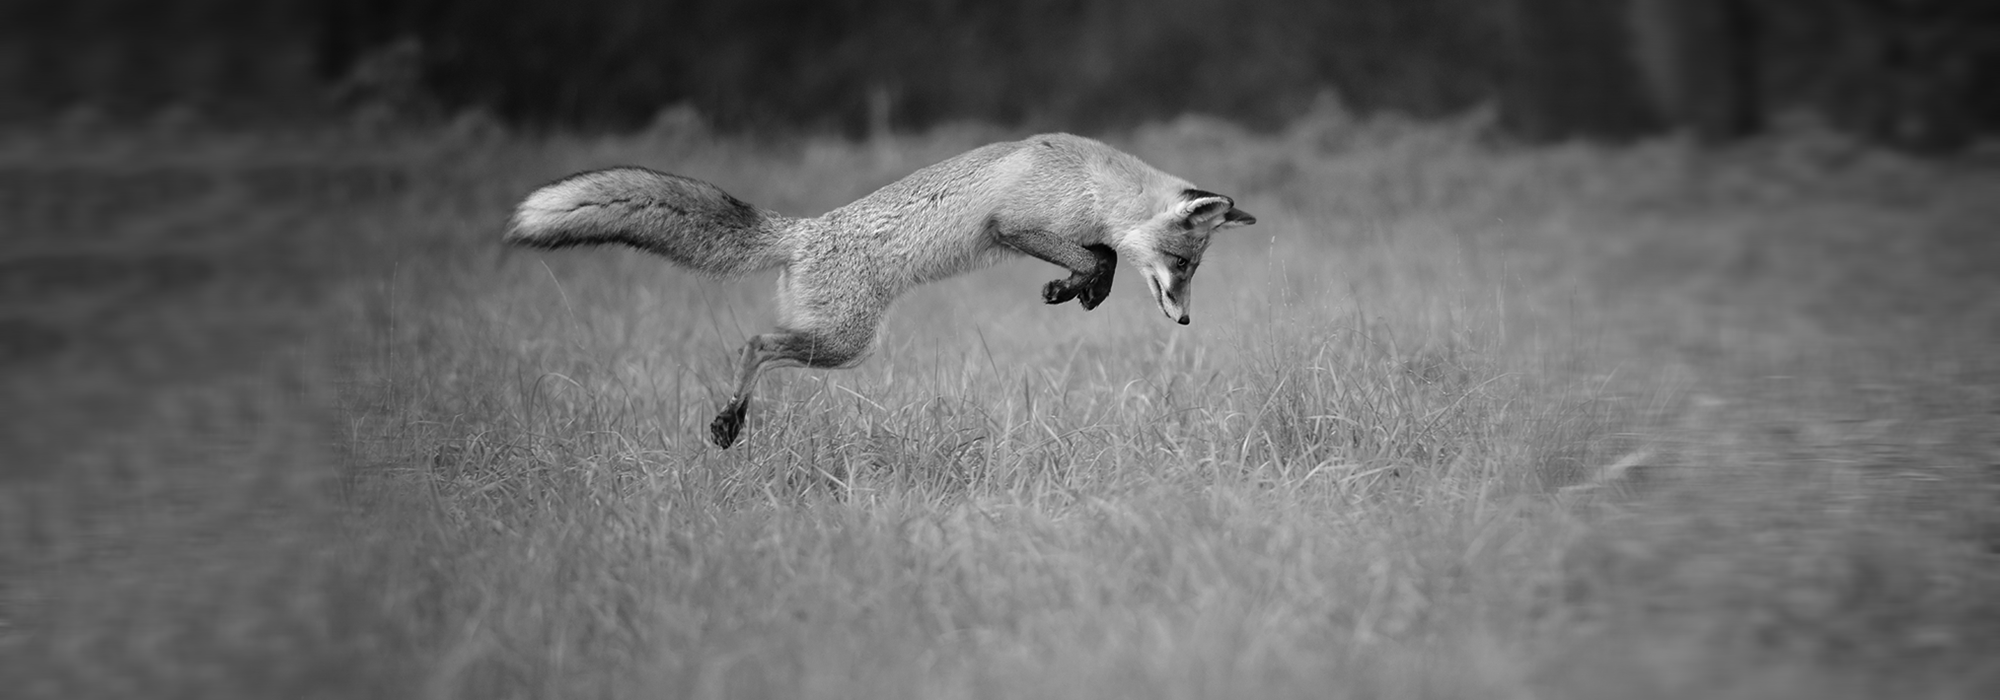 Fuchs im Sprung